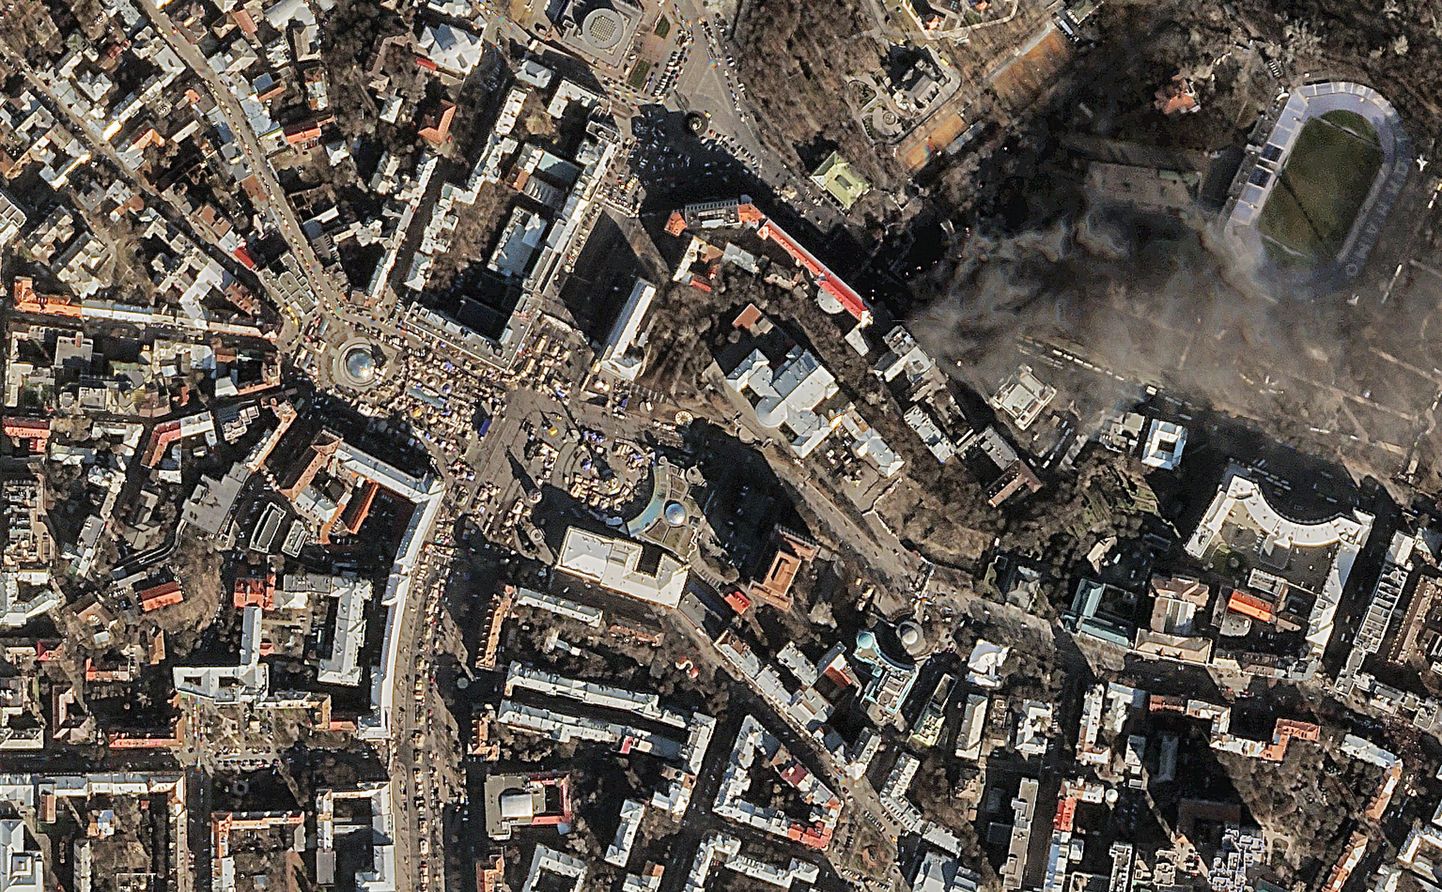 See Skyboxi pilt on tehtud 18. veebruaril 2014 Kiievi tänavalahingutest.